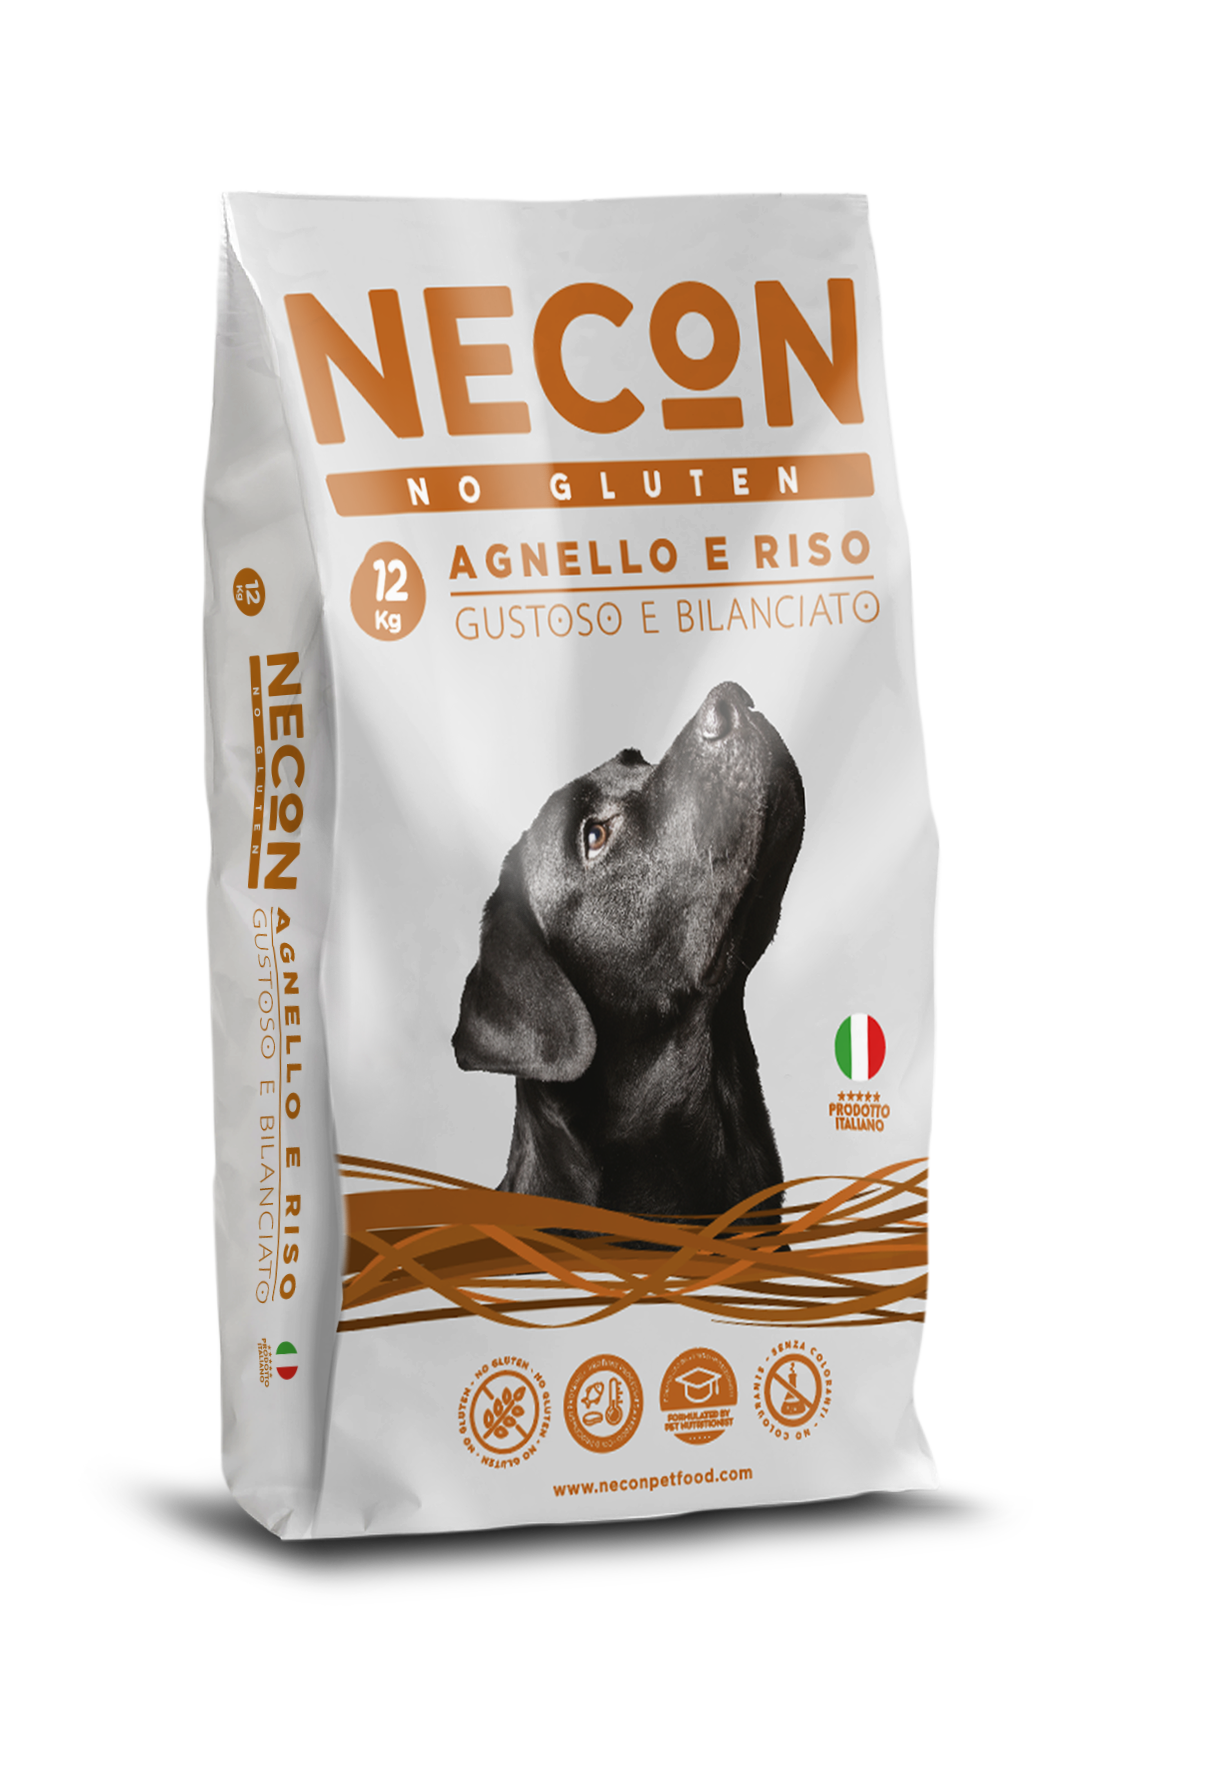 Necon Pet Food lancia un nuovo alimento della linea No Gluten per i cani